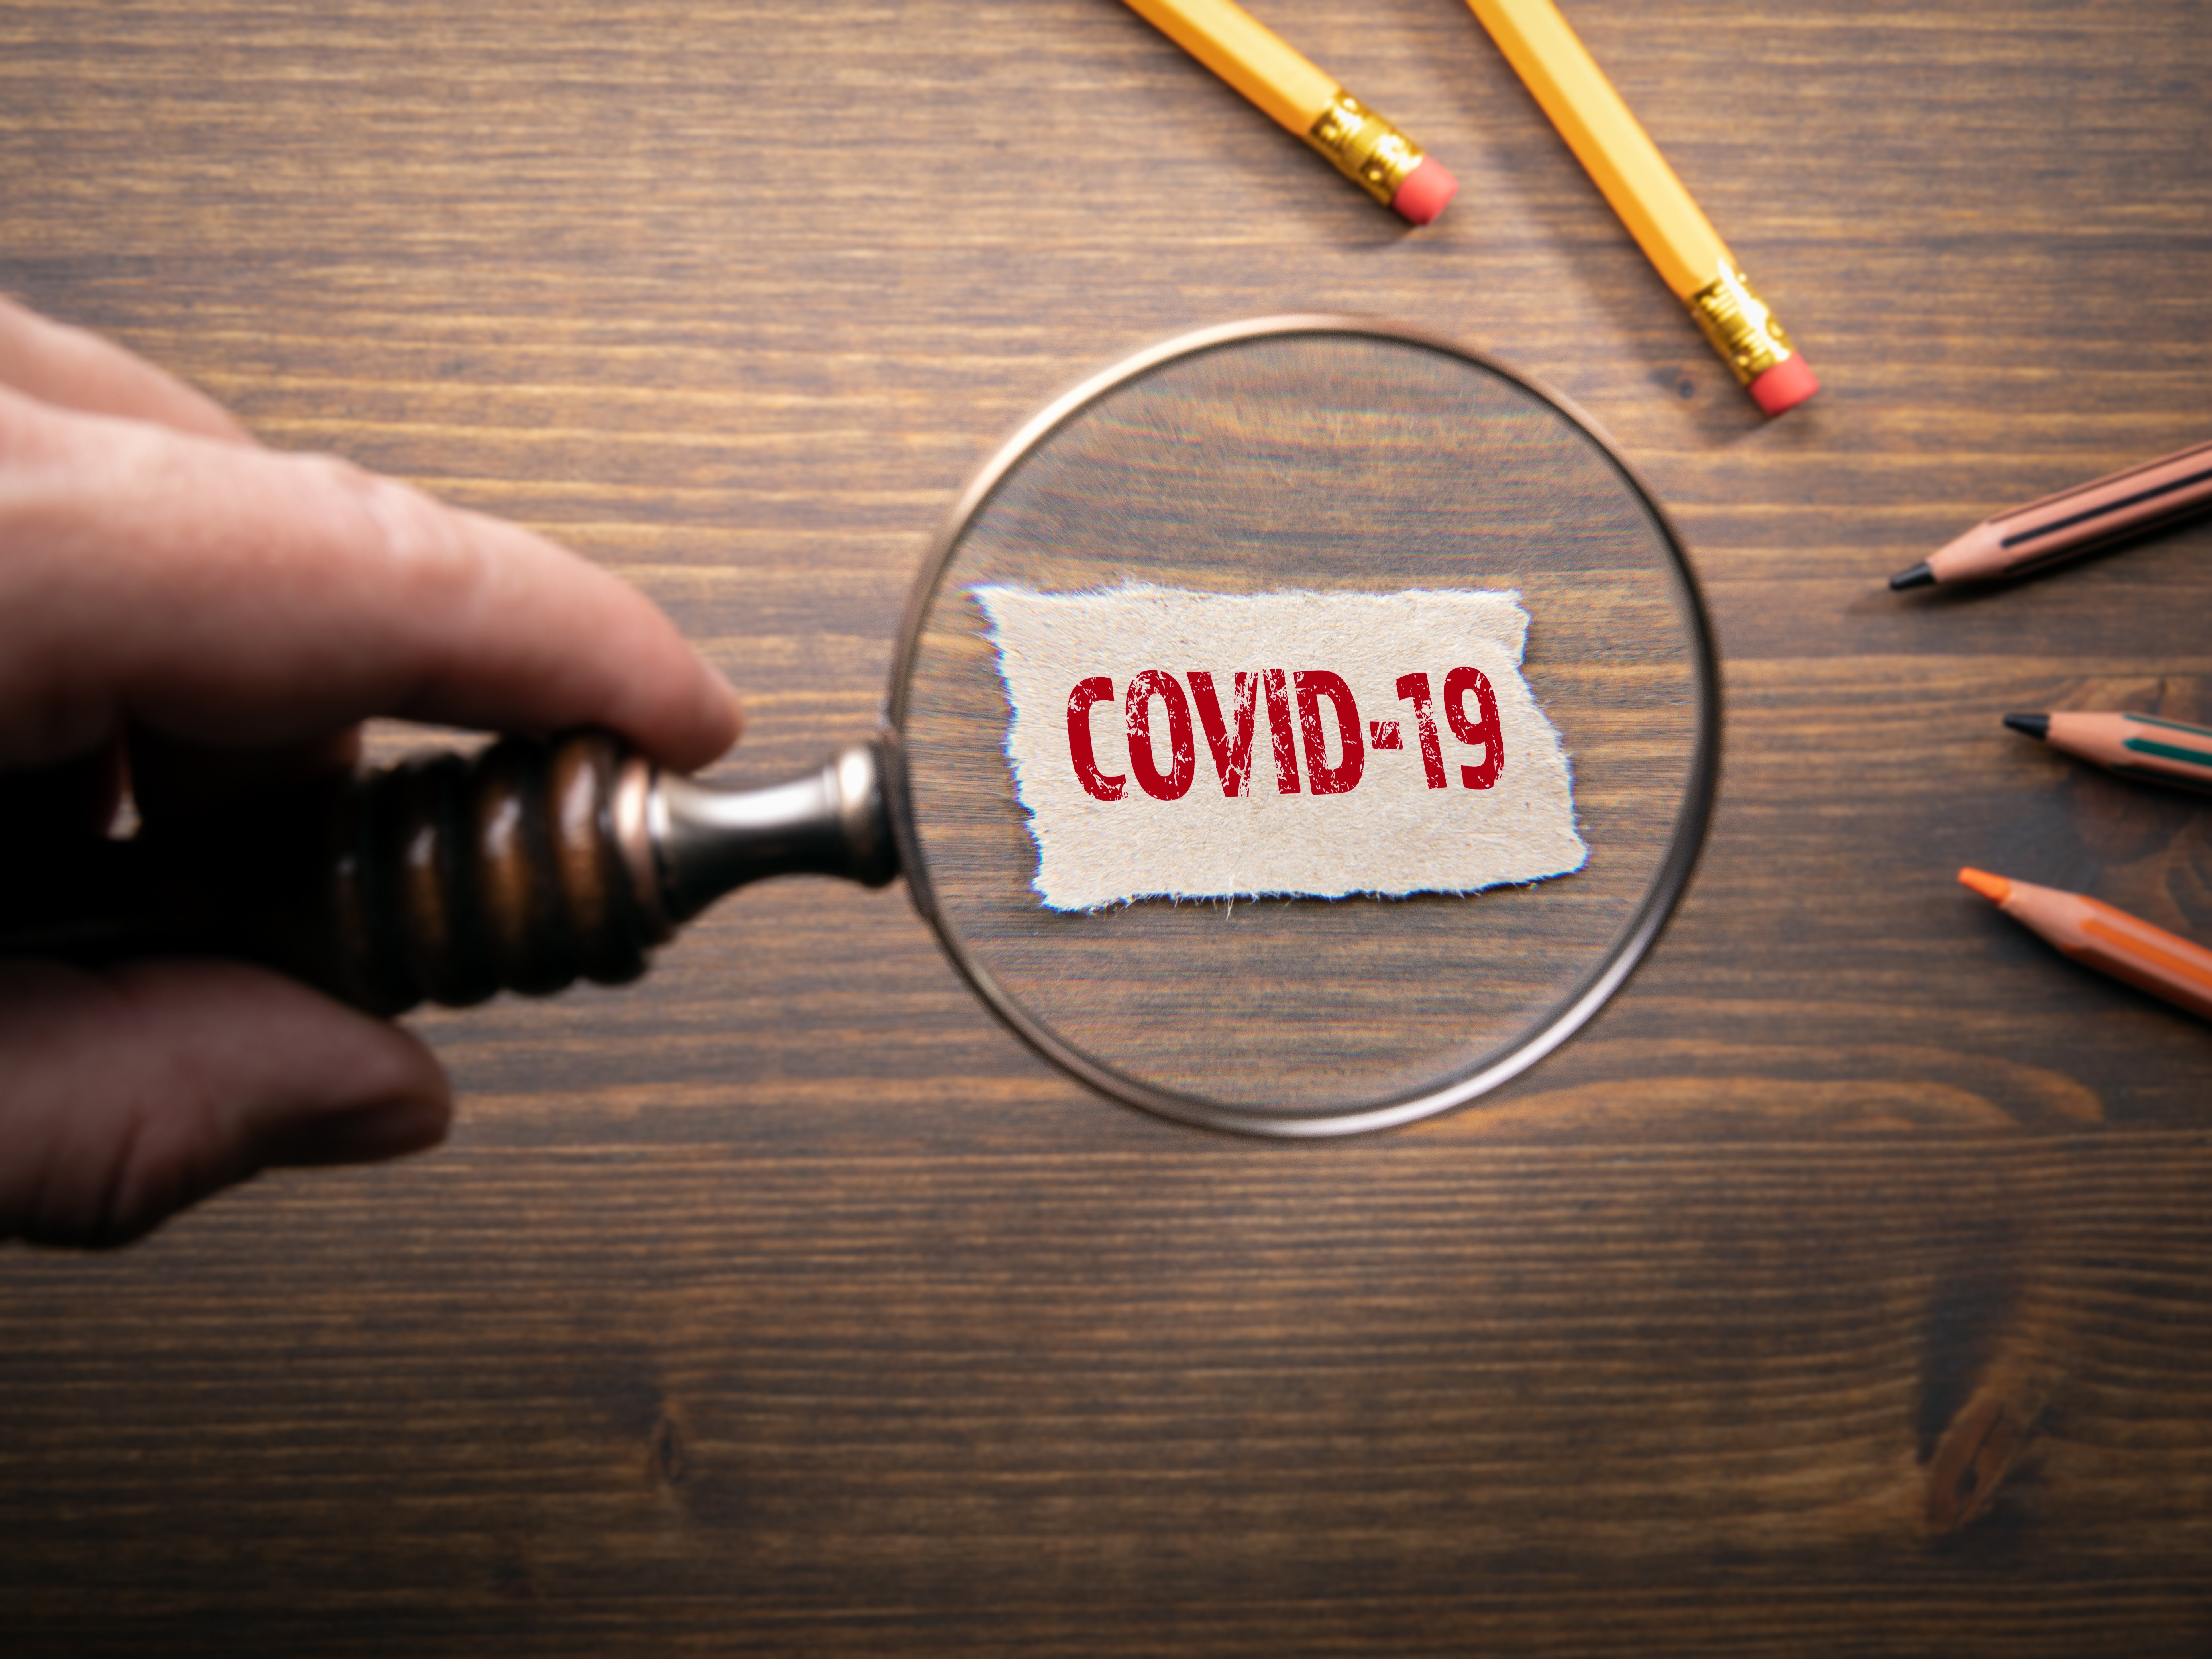 ΣΕΒΕ: Παρατηρήσεις - προτάσεις στην πρόσκληση για την επιδότηση τόκων υφιστάμενων δανείων μικρών και μεσαίων επιχειρήσεων πληττόμενων από τα μέτρα αντιμετώπισης της πανδημίας του COVID-19